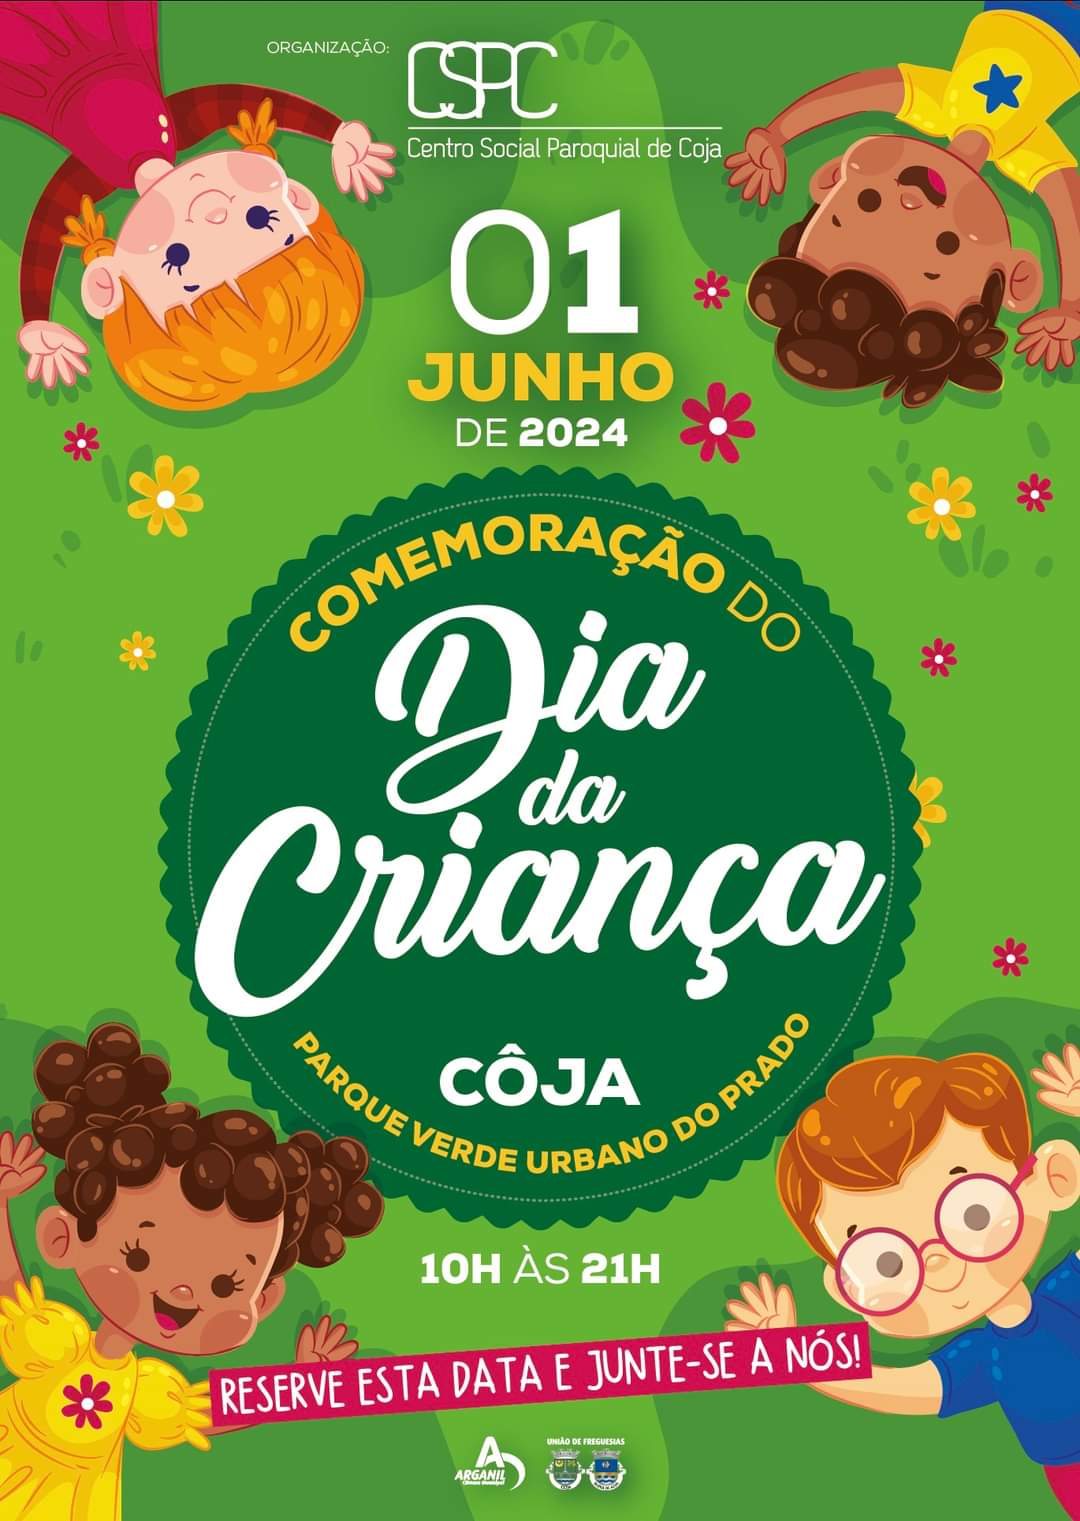 1 Jun - 10:00 / 21:00 - Dia da Criança - organização CSPC (Parque Verde do Prado - Côja)